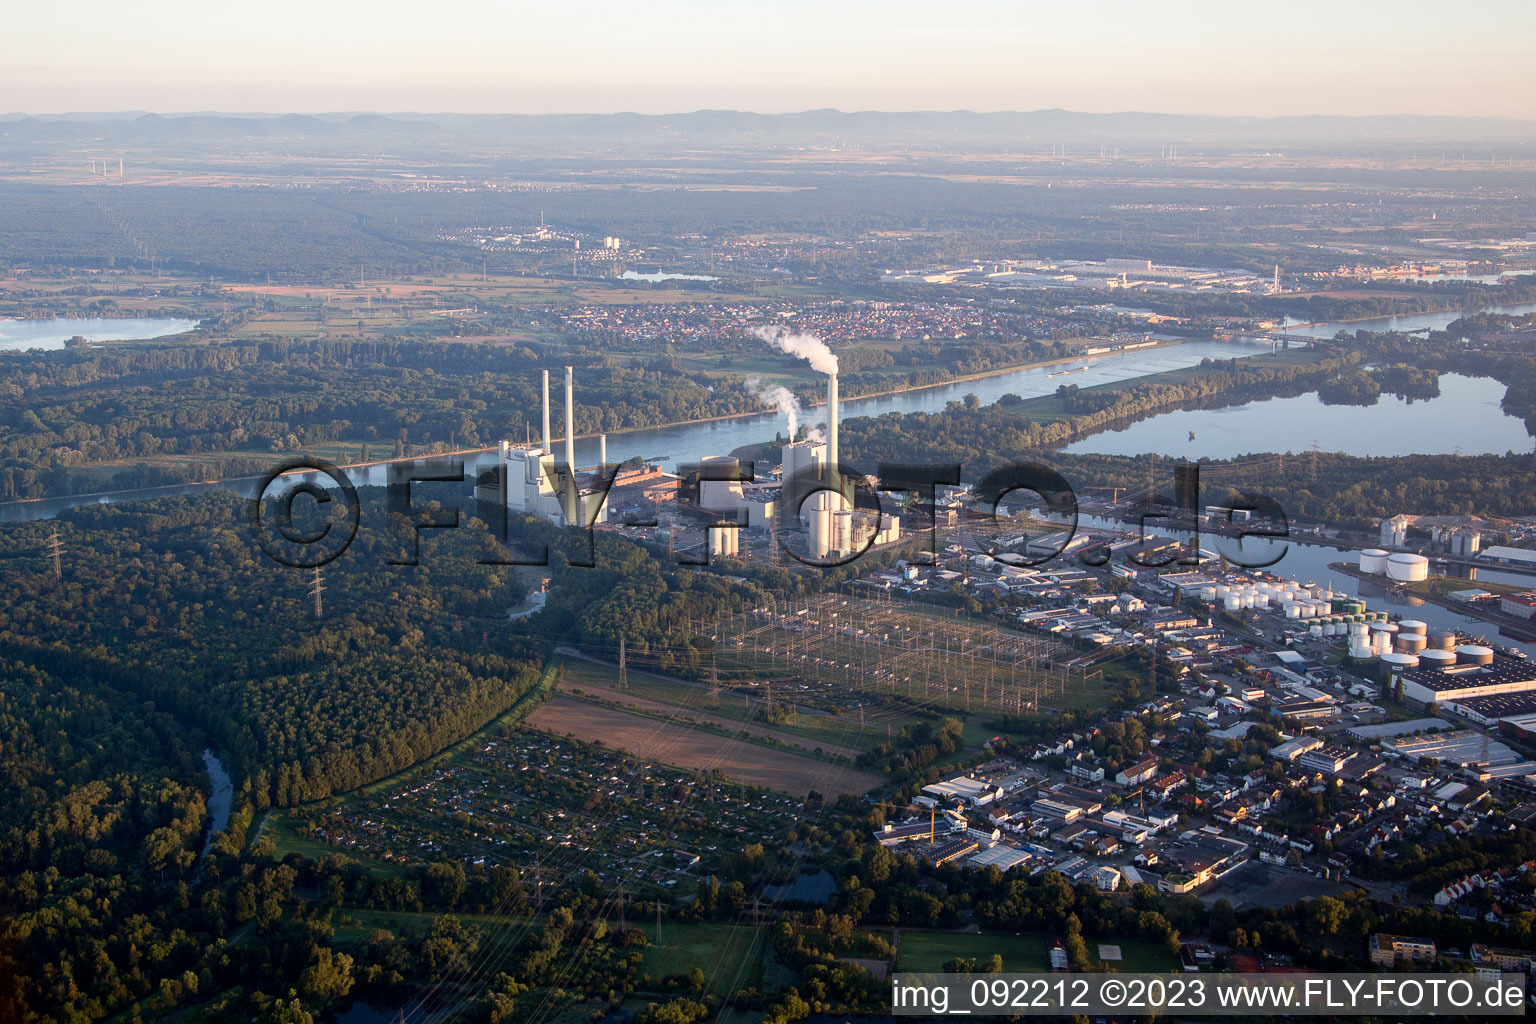 Drone image of KA Rheinhafen in the district Rheinhafen in Karlsruhe in the state Baden-Wuerttemberg, Germany